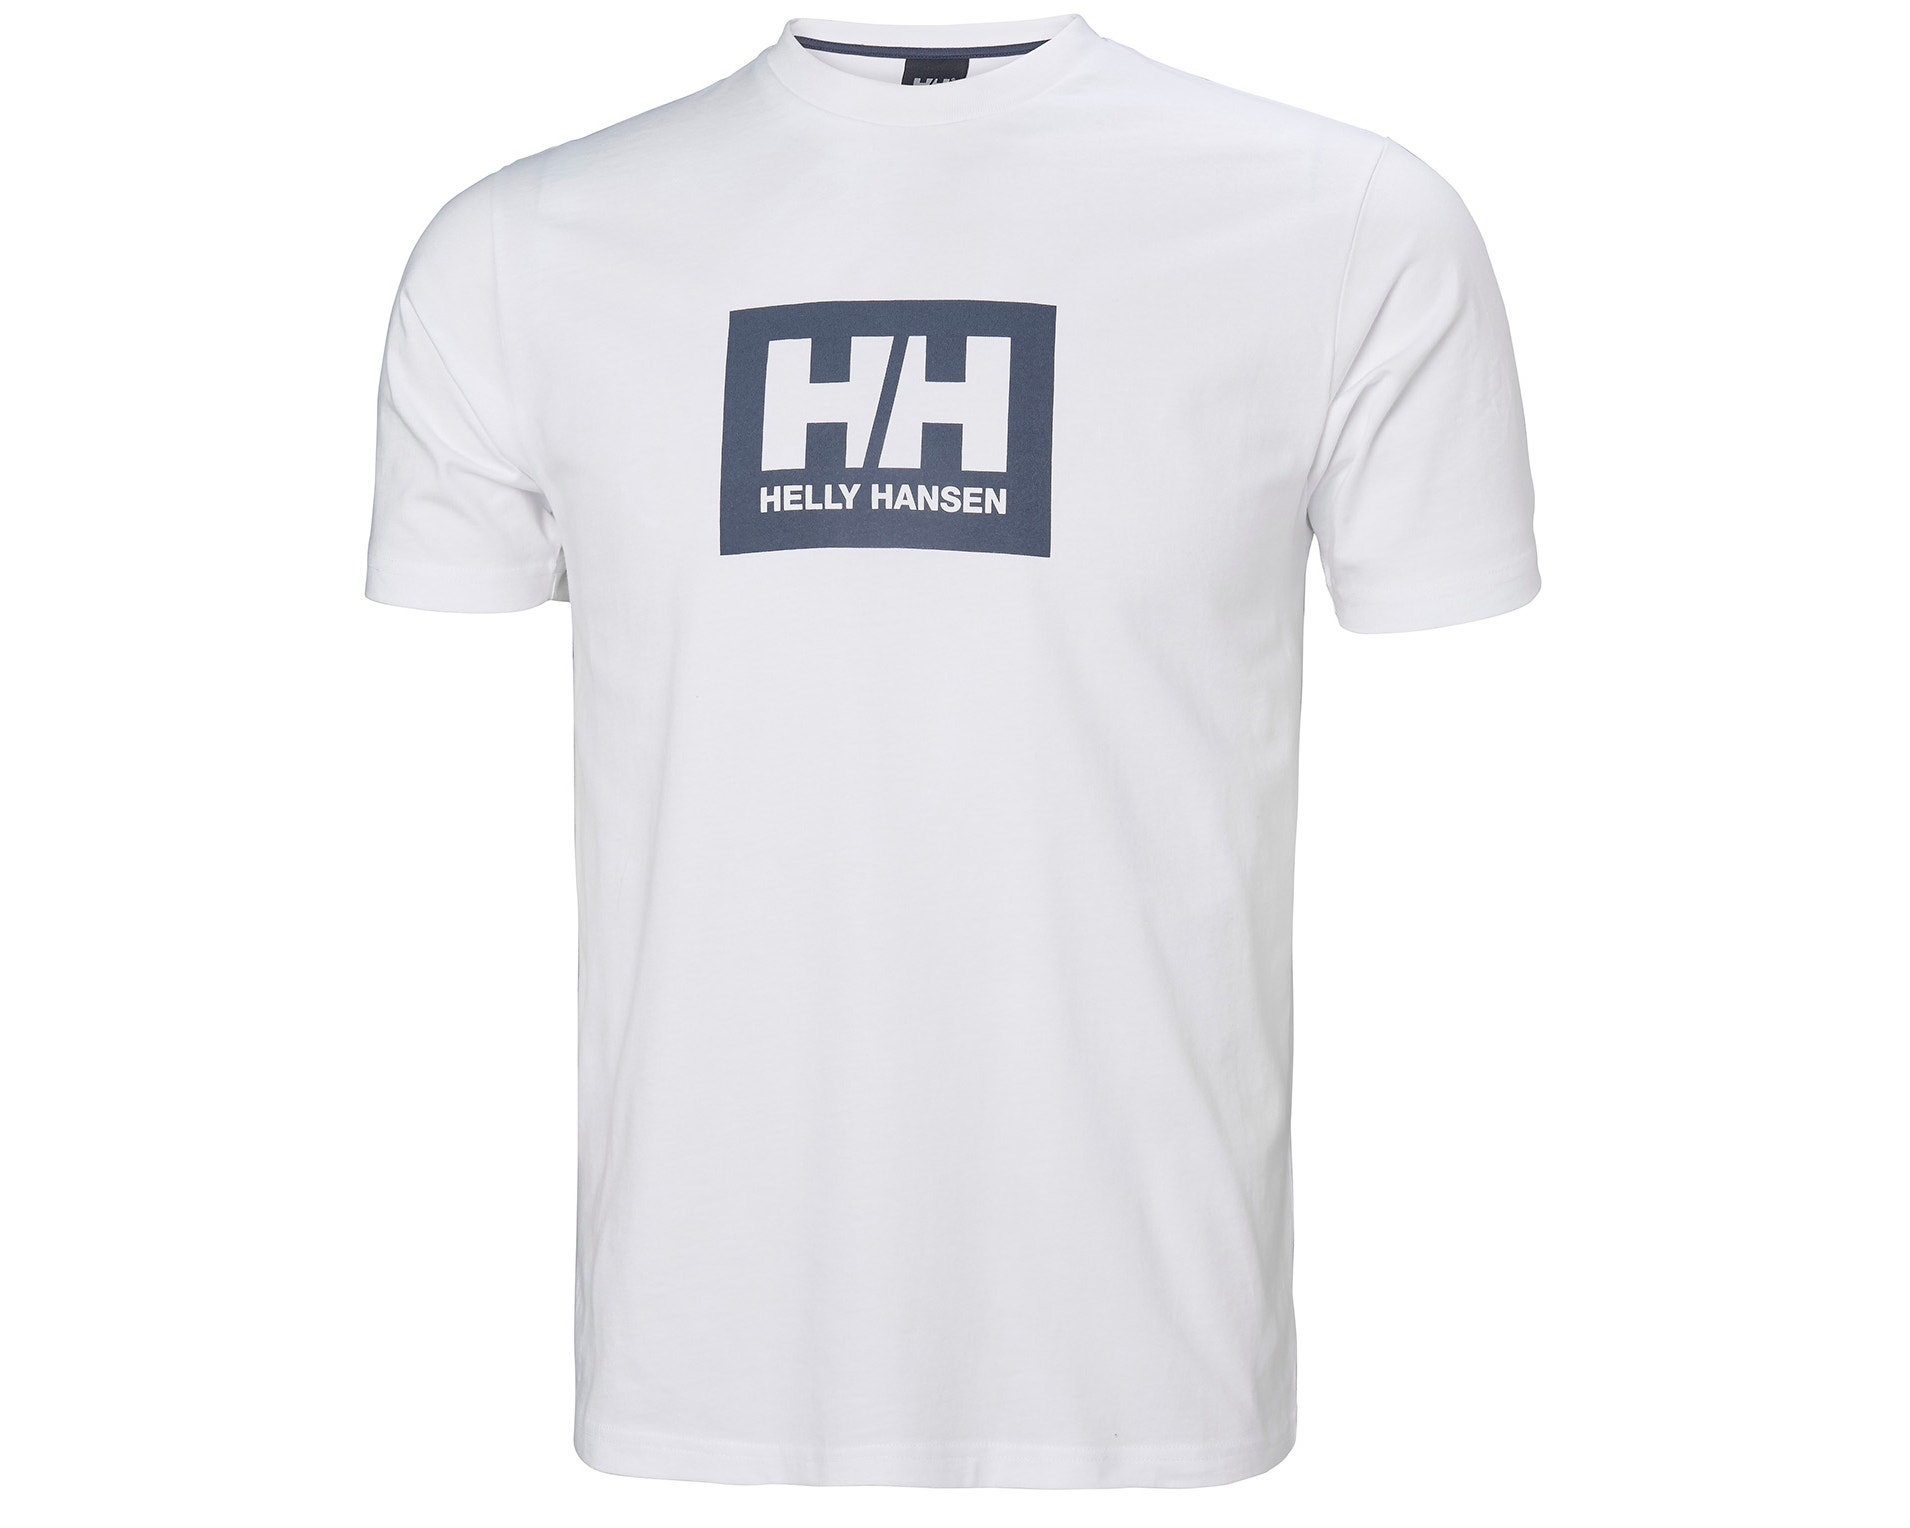 Helly hansen box t shirt 53285